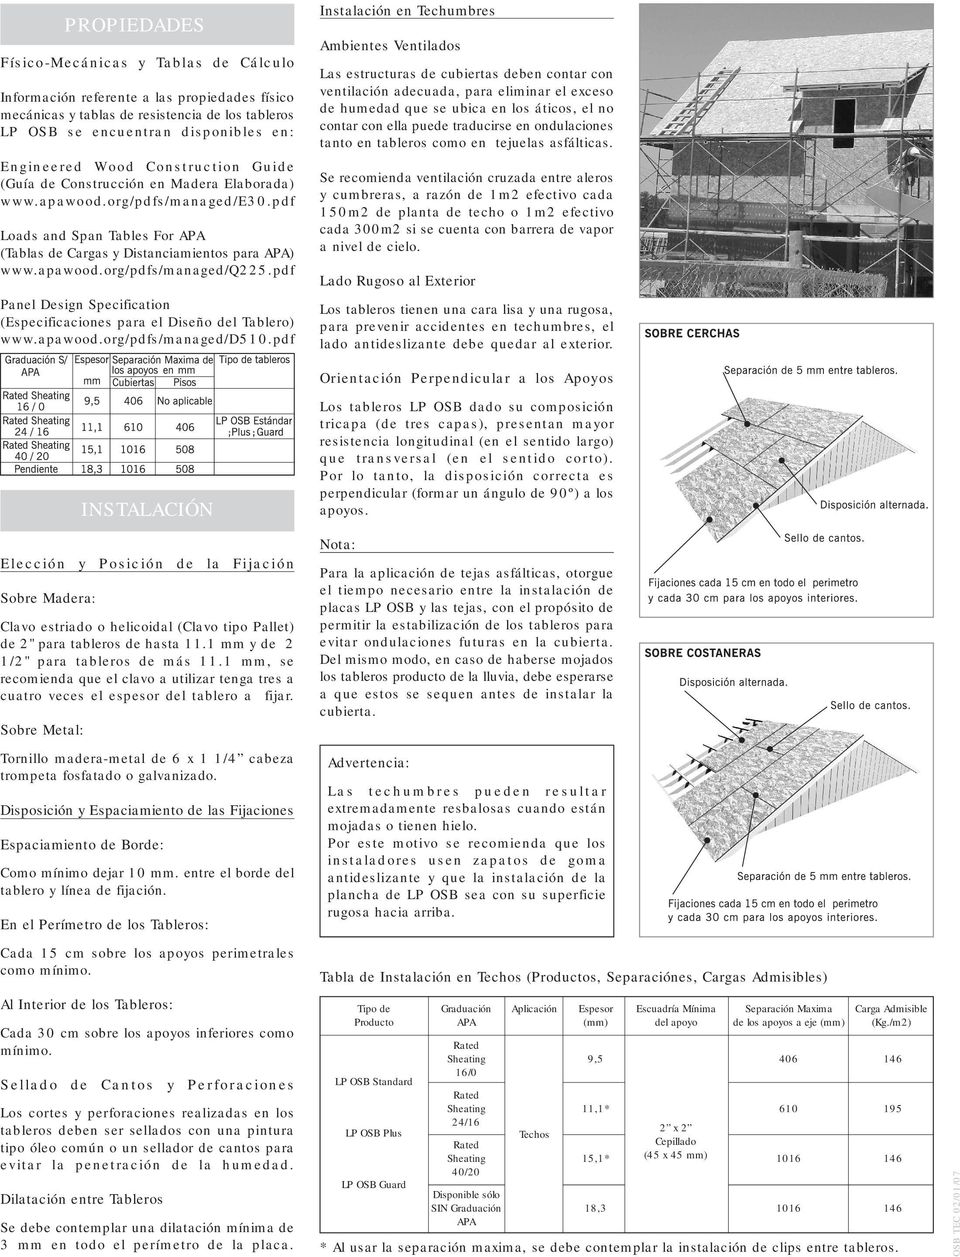 pdf Panel Design Specification (Especificaciones para el Diseño del Tablero) www.apawood.org/pdfs/managed/d510.